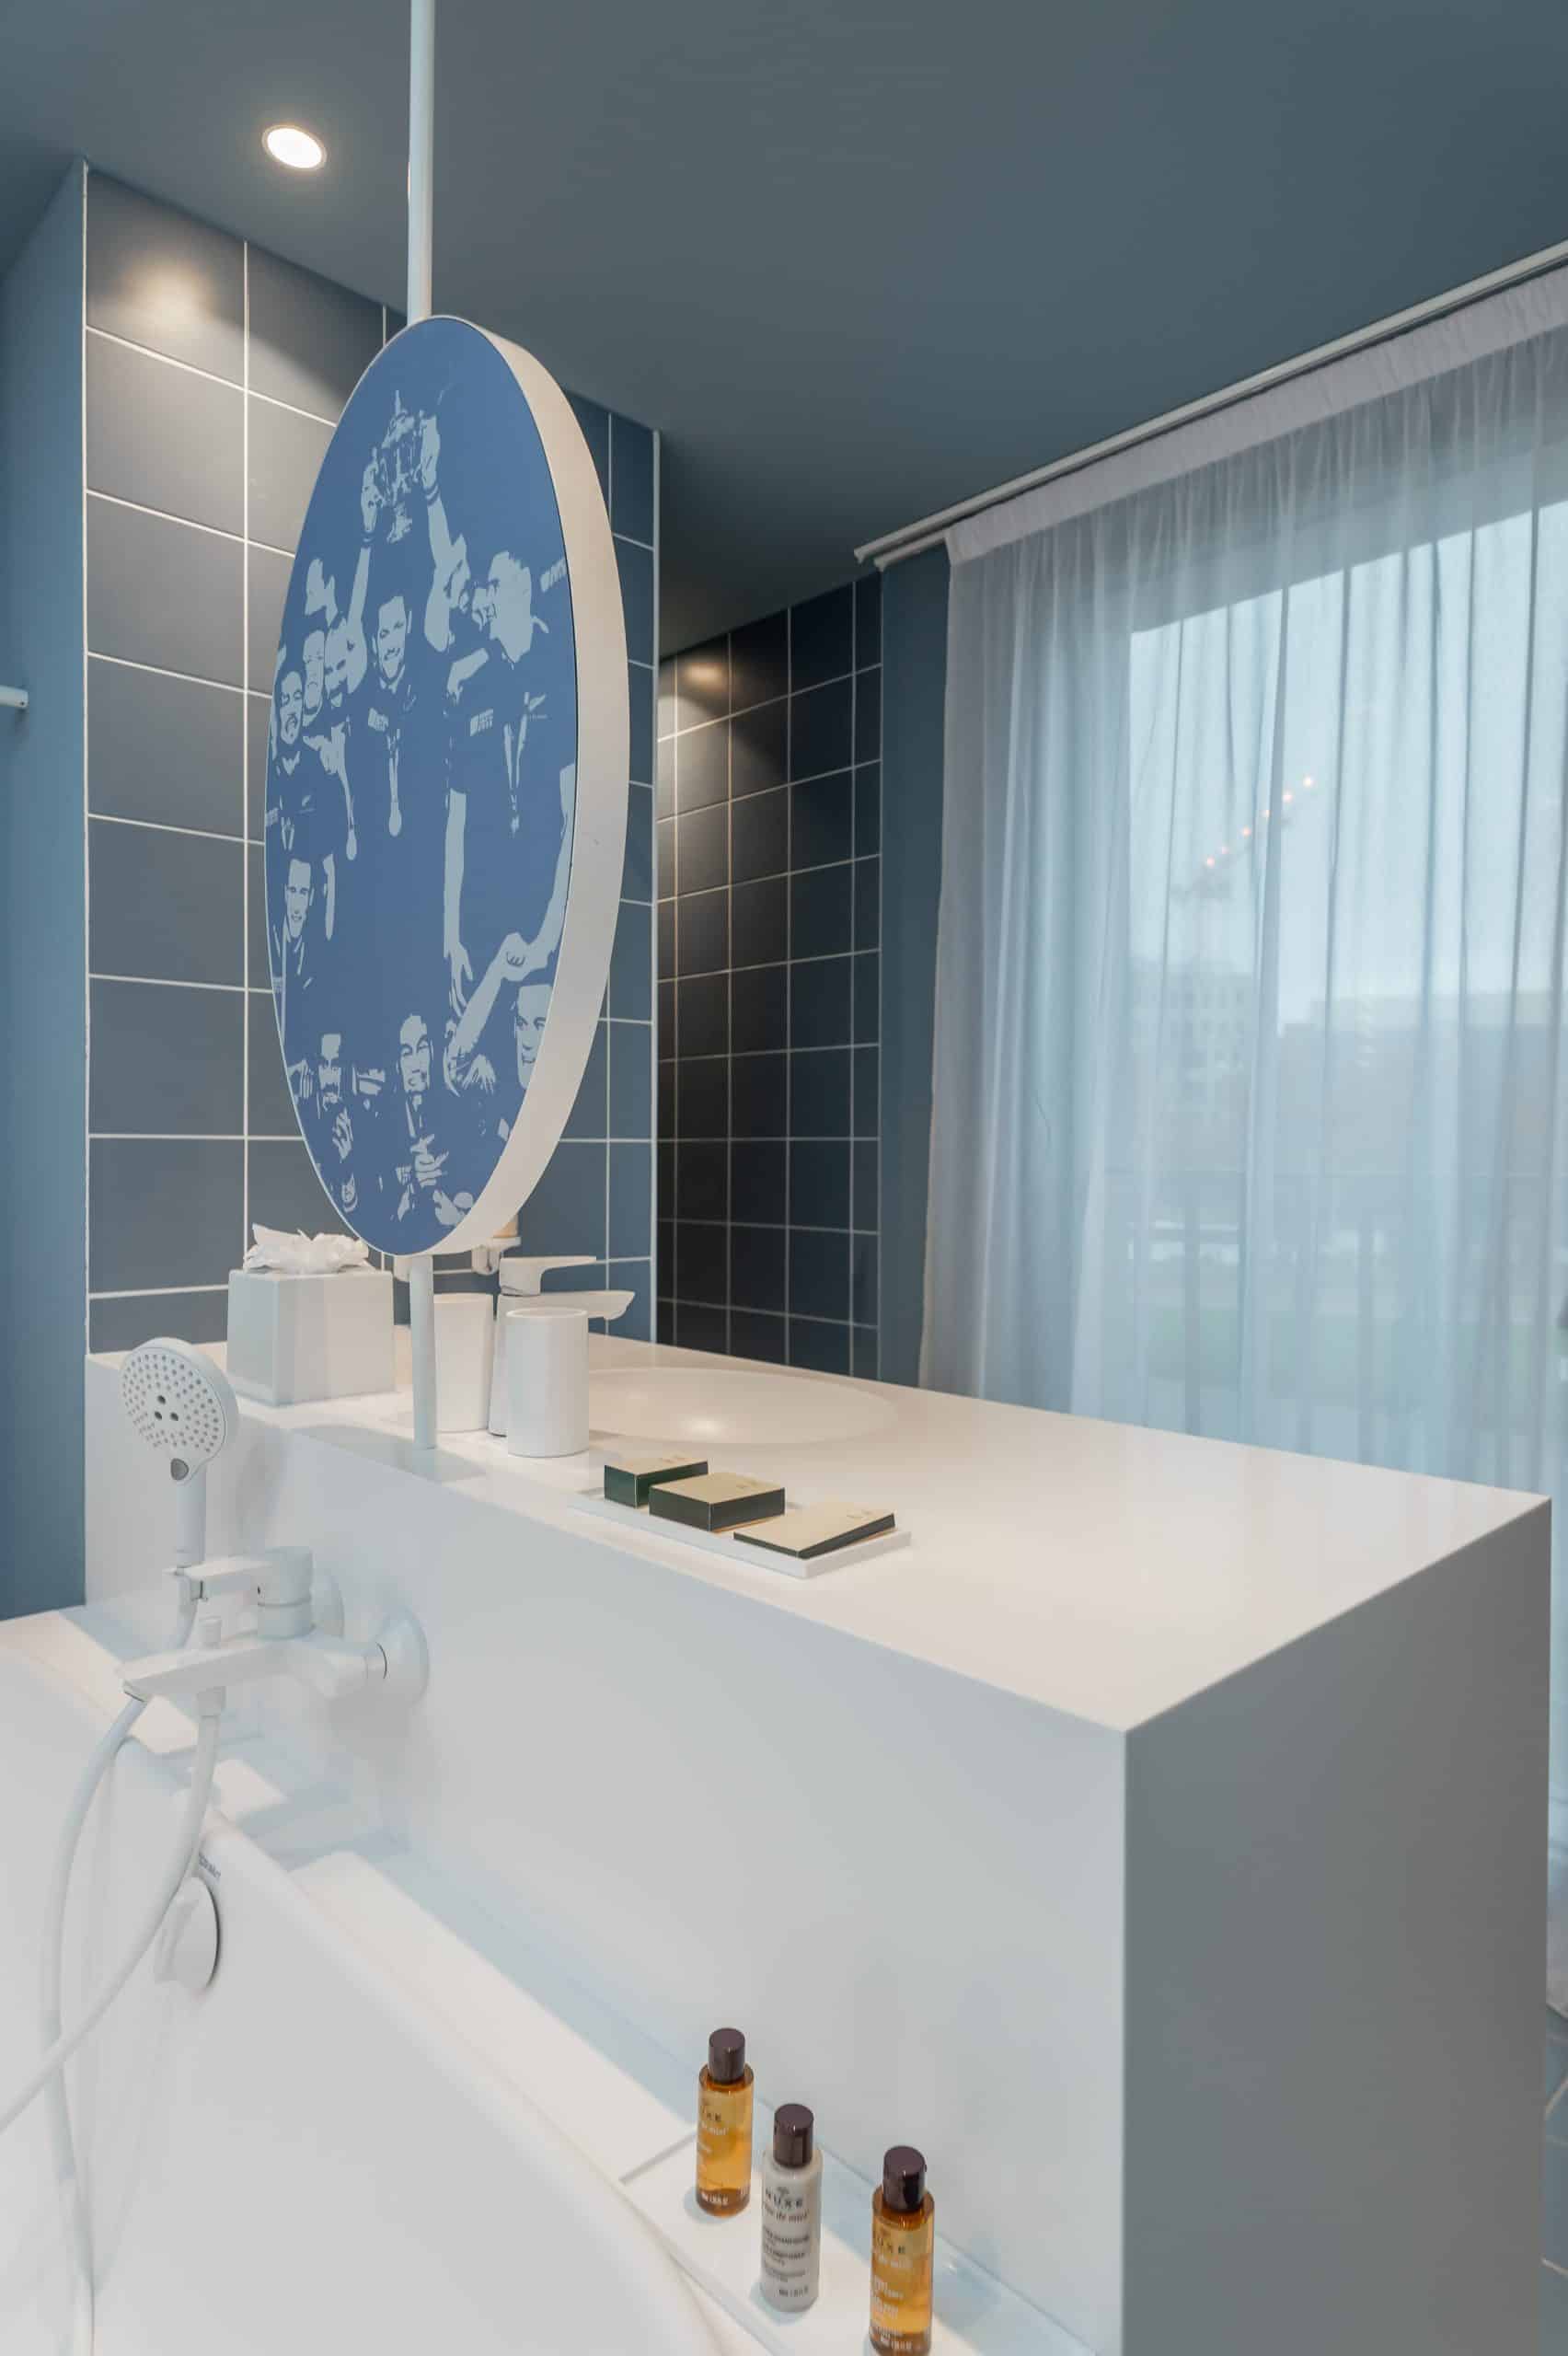 Les chambres du ruck hotel dispose de superbes salles de bain dans des chambres modenrdes et design